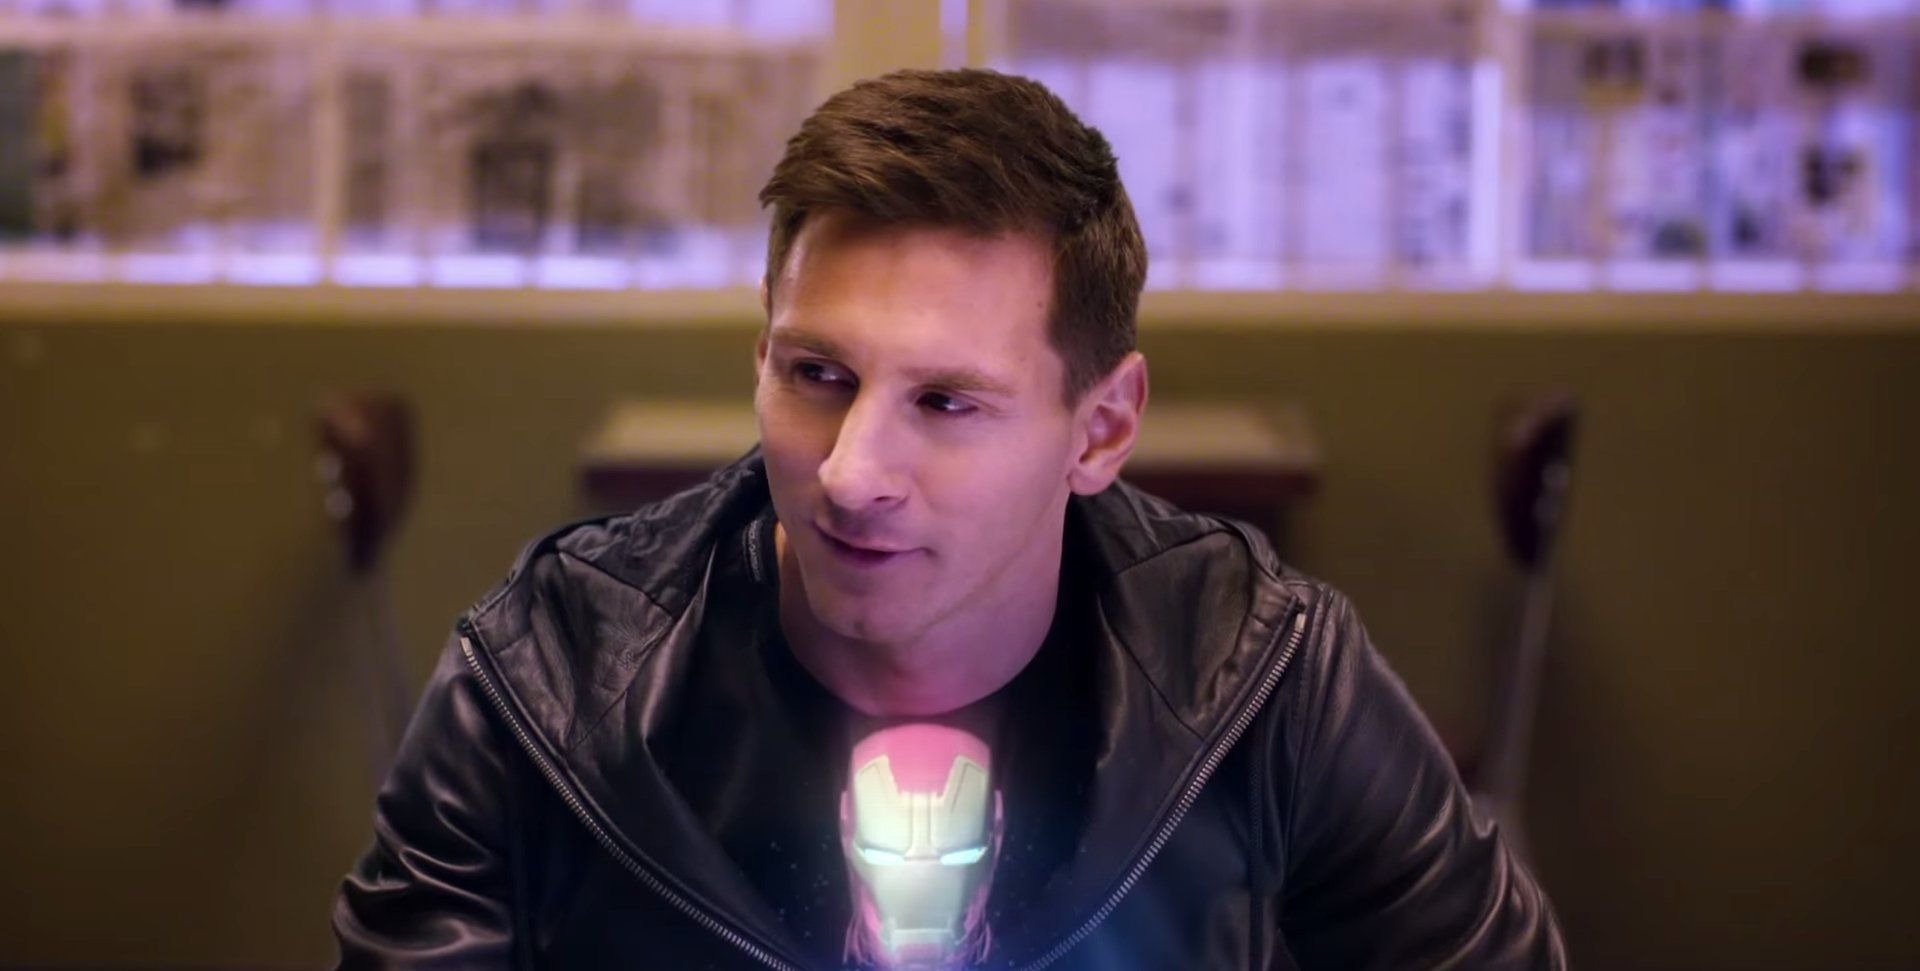 Messi dans une pub Samsung Galaxy S6 / Avengers #8